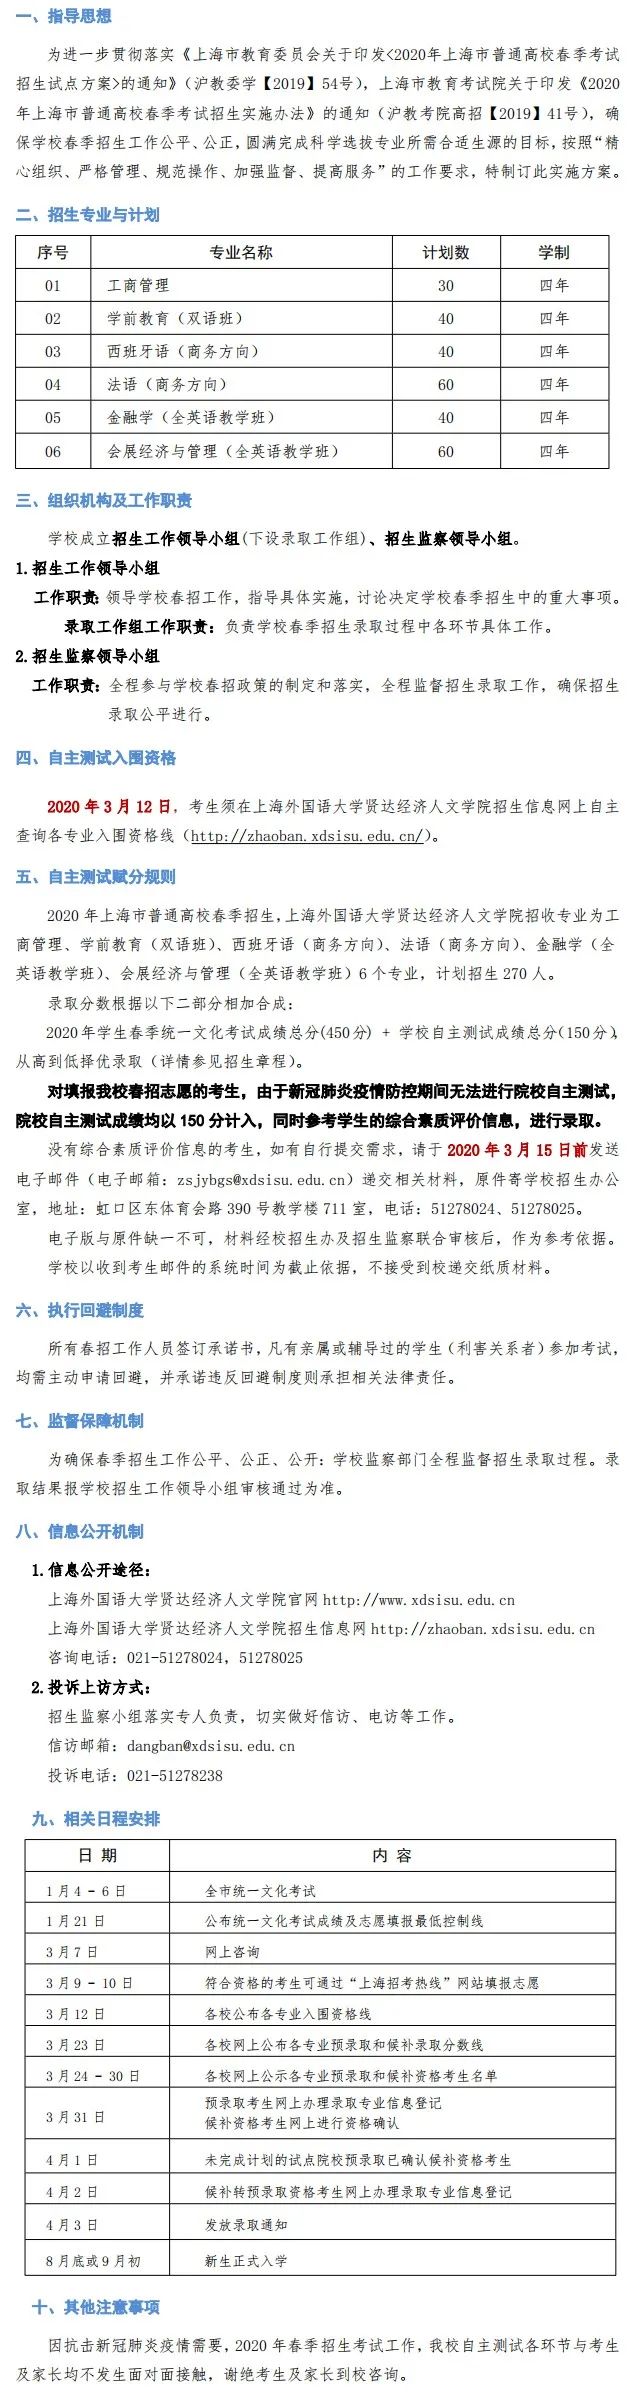 上海外国语大学贤达经济人文学院2020年春季招生自主测试实施方案